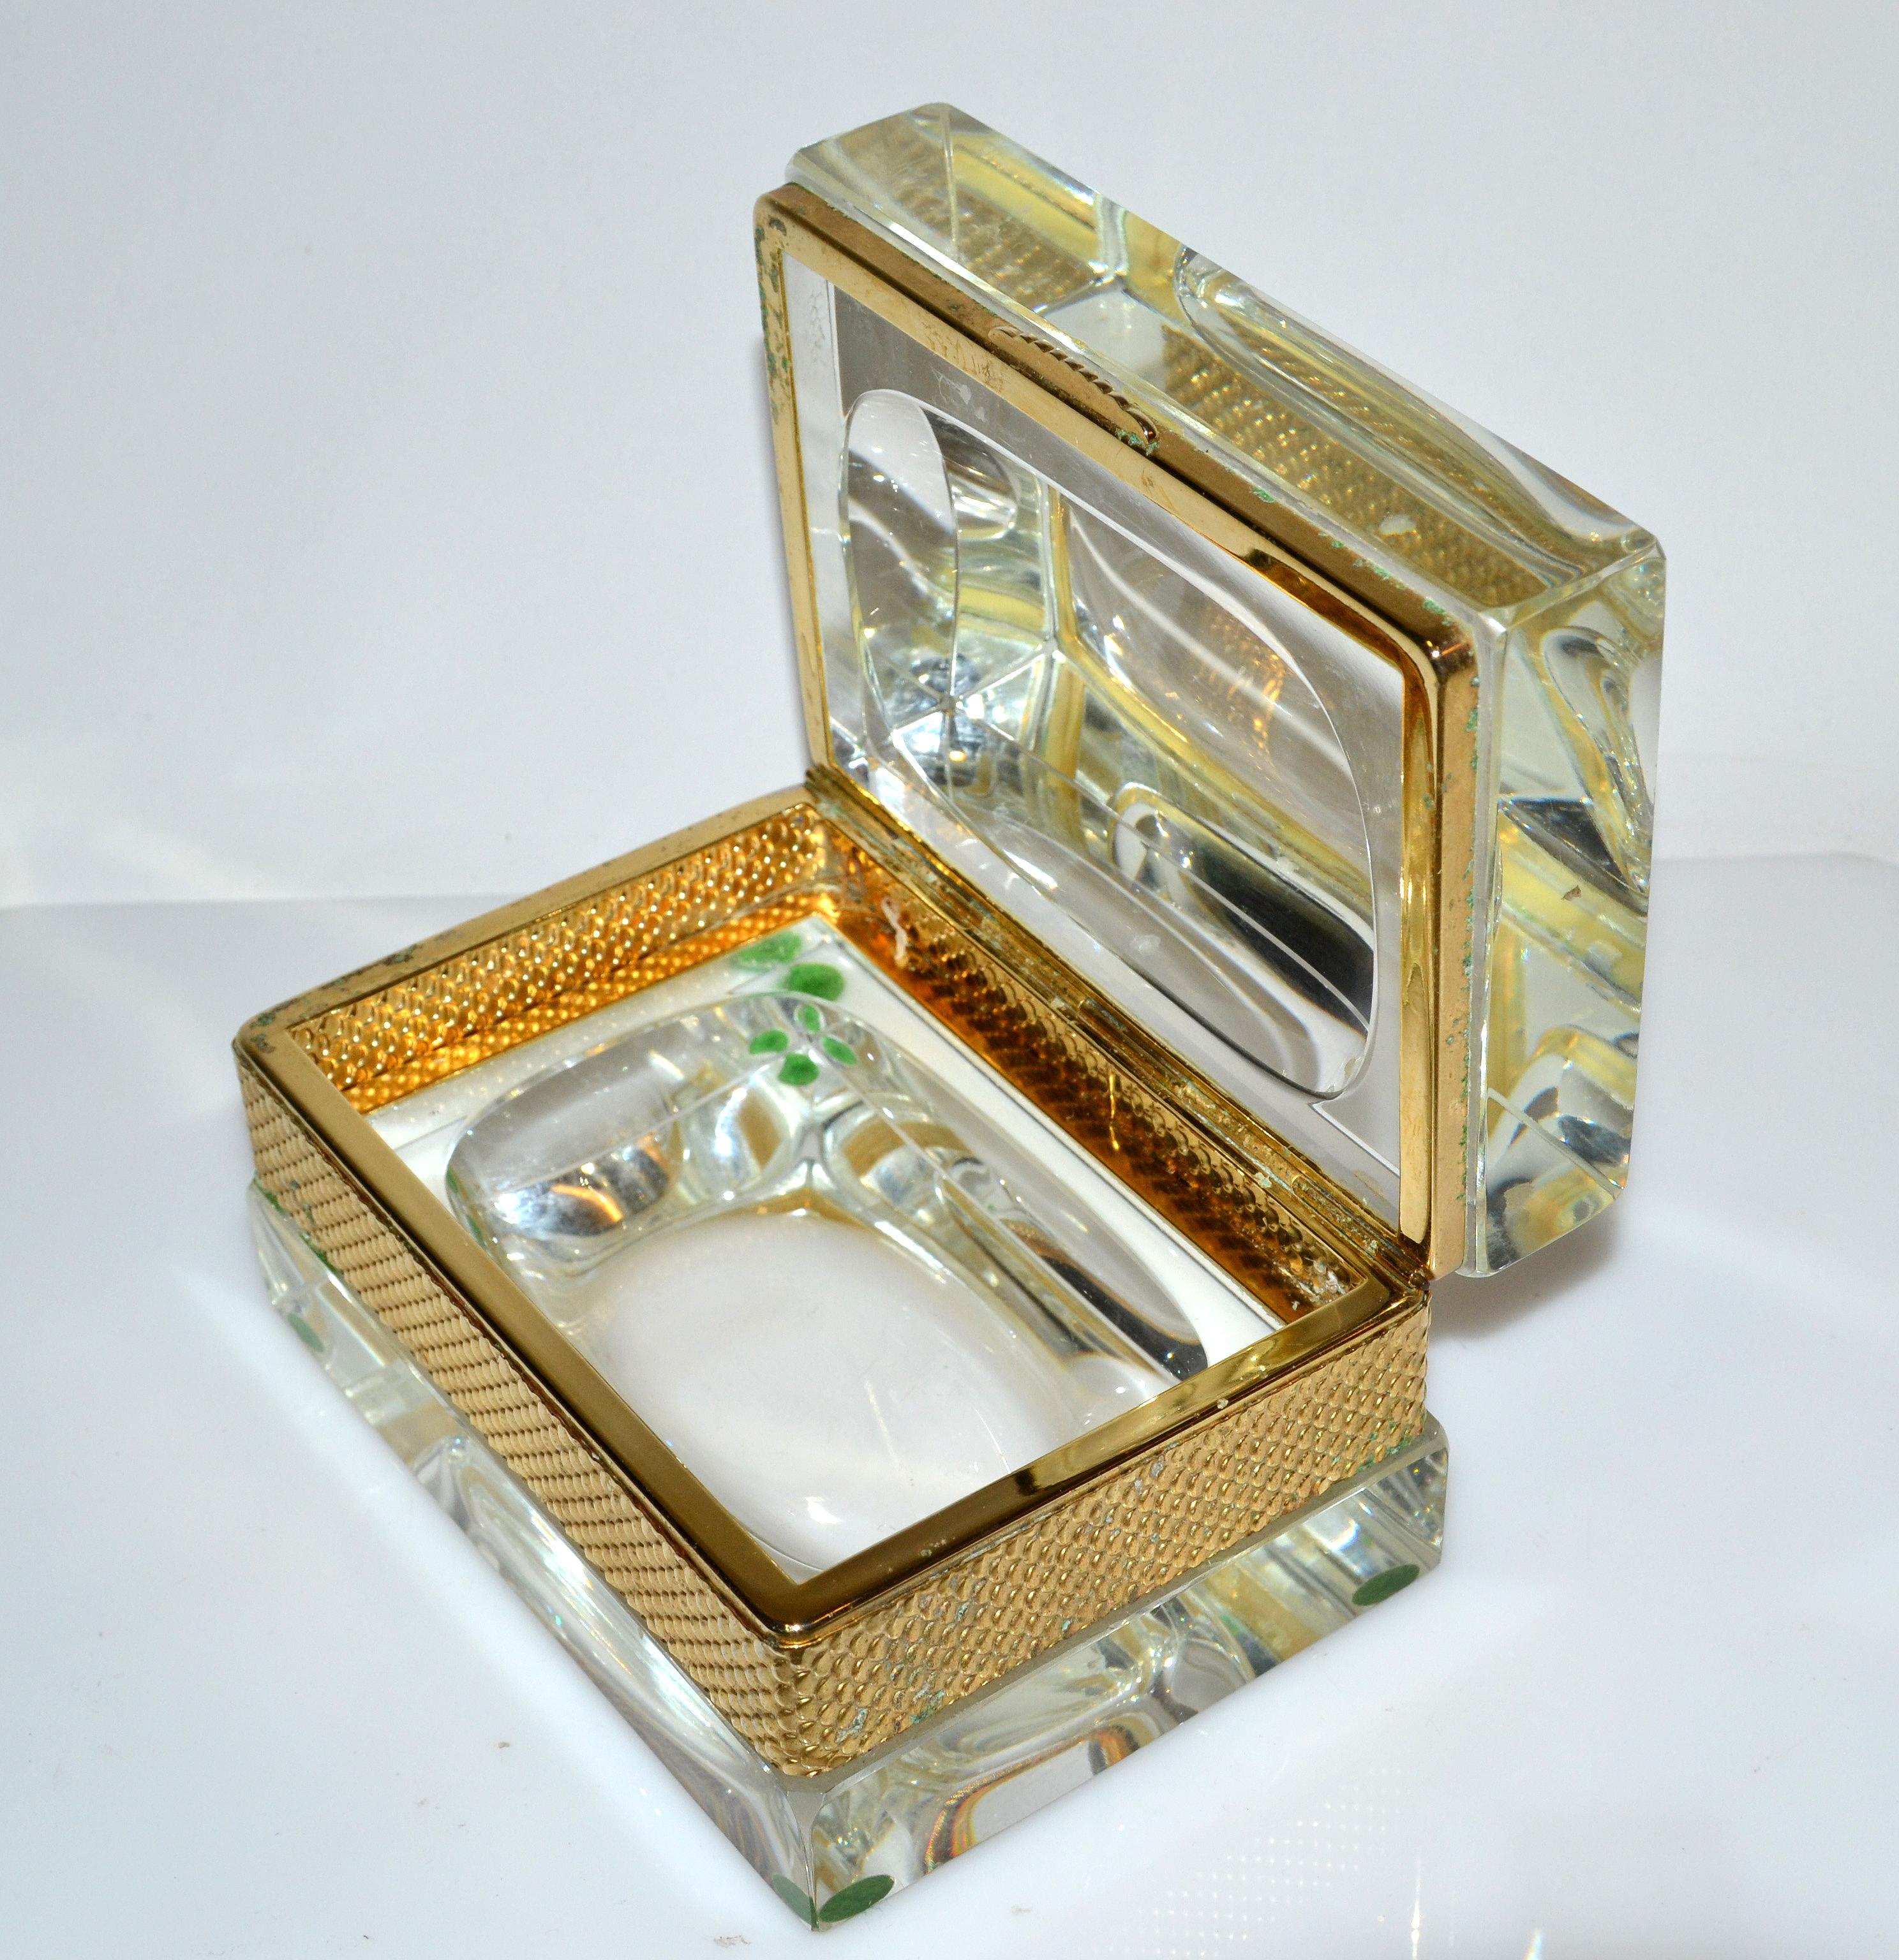 20th Century Italian Murano Glass & 24k Gold Plate Jewelry Case Art Deco Mandruzzato Style